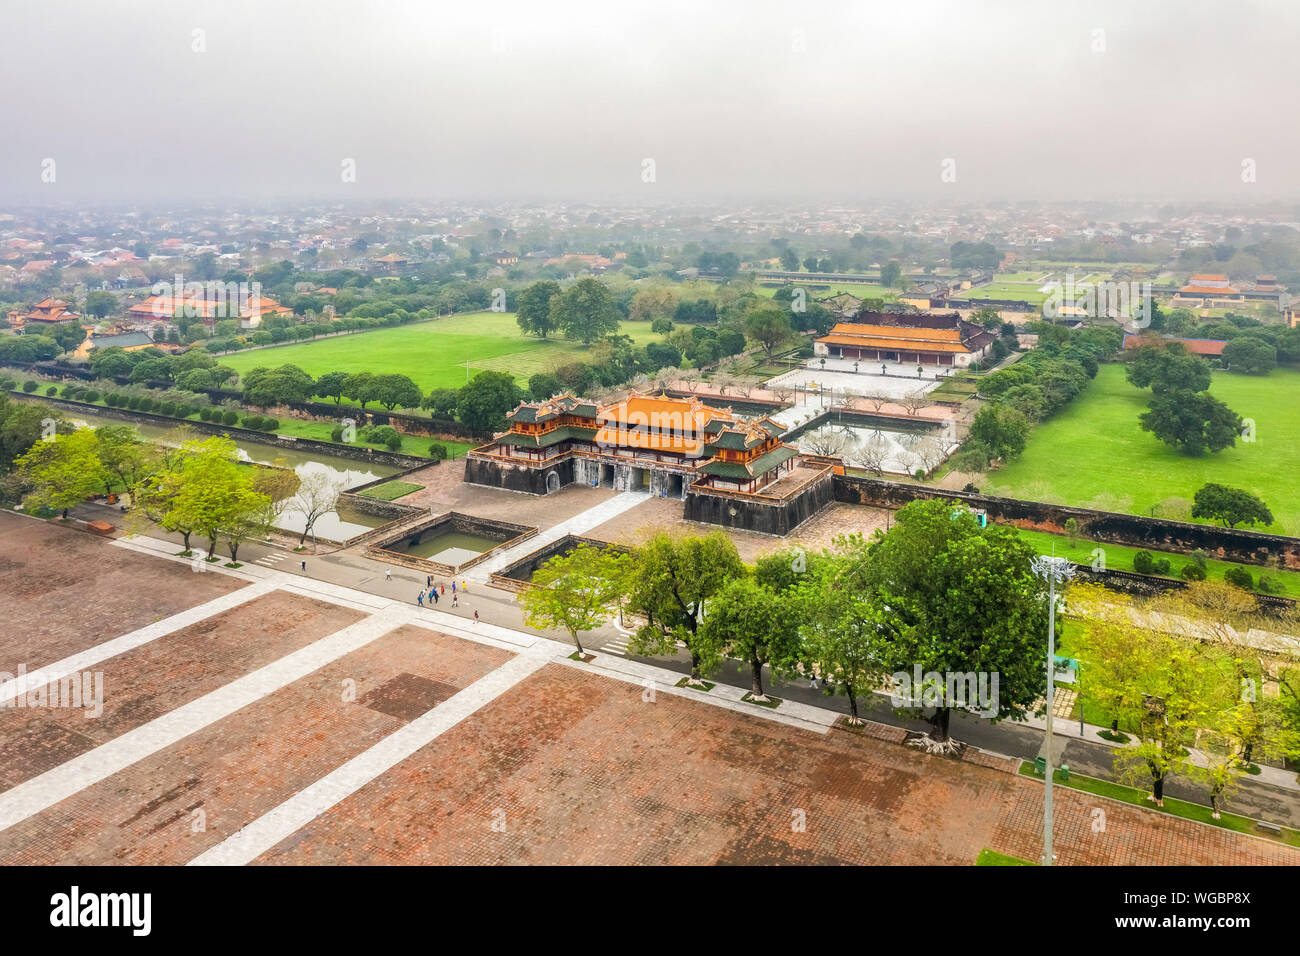 Farbton der Zitadelle. Imperial Royal Palast der Nguyen Dynastie in Hue, Vietnam. Ein Unesco Weltkulturerbe. Stockfoto